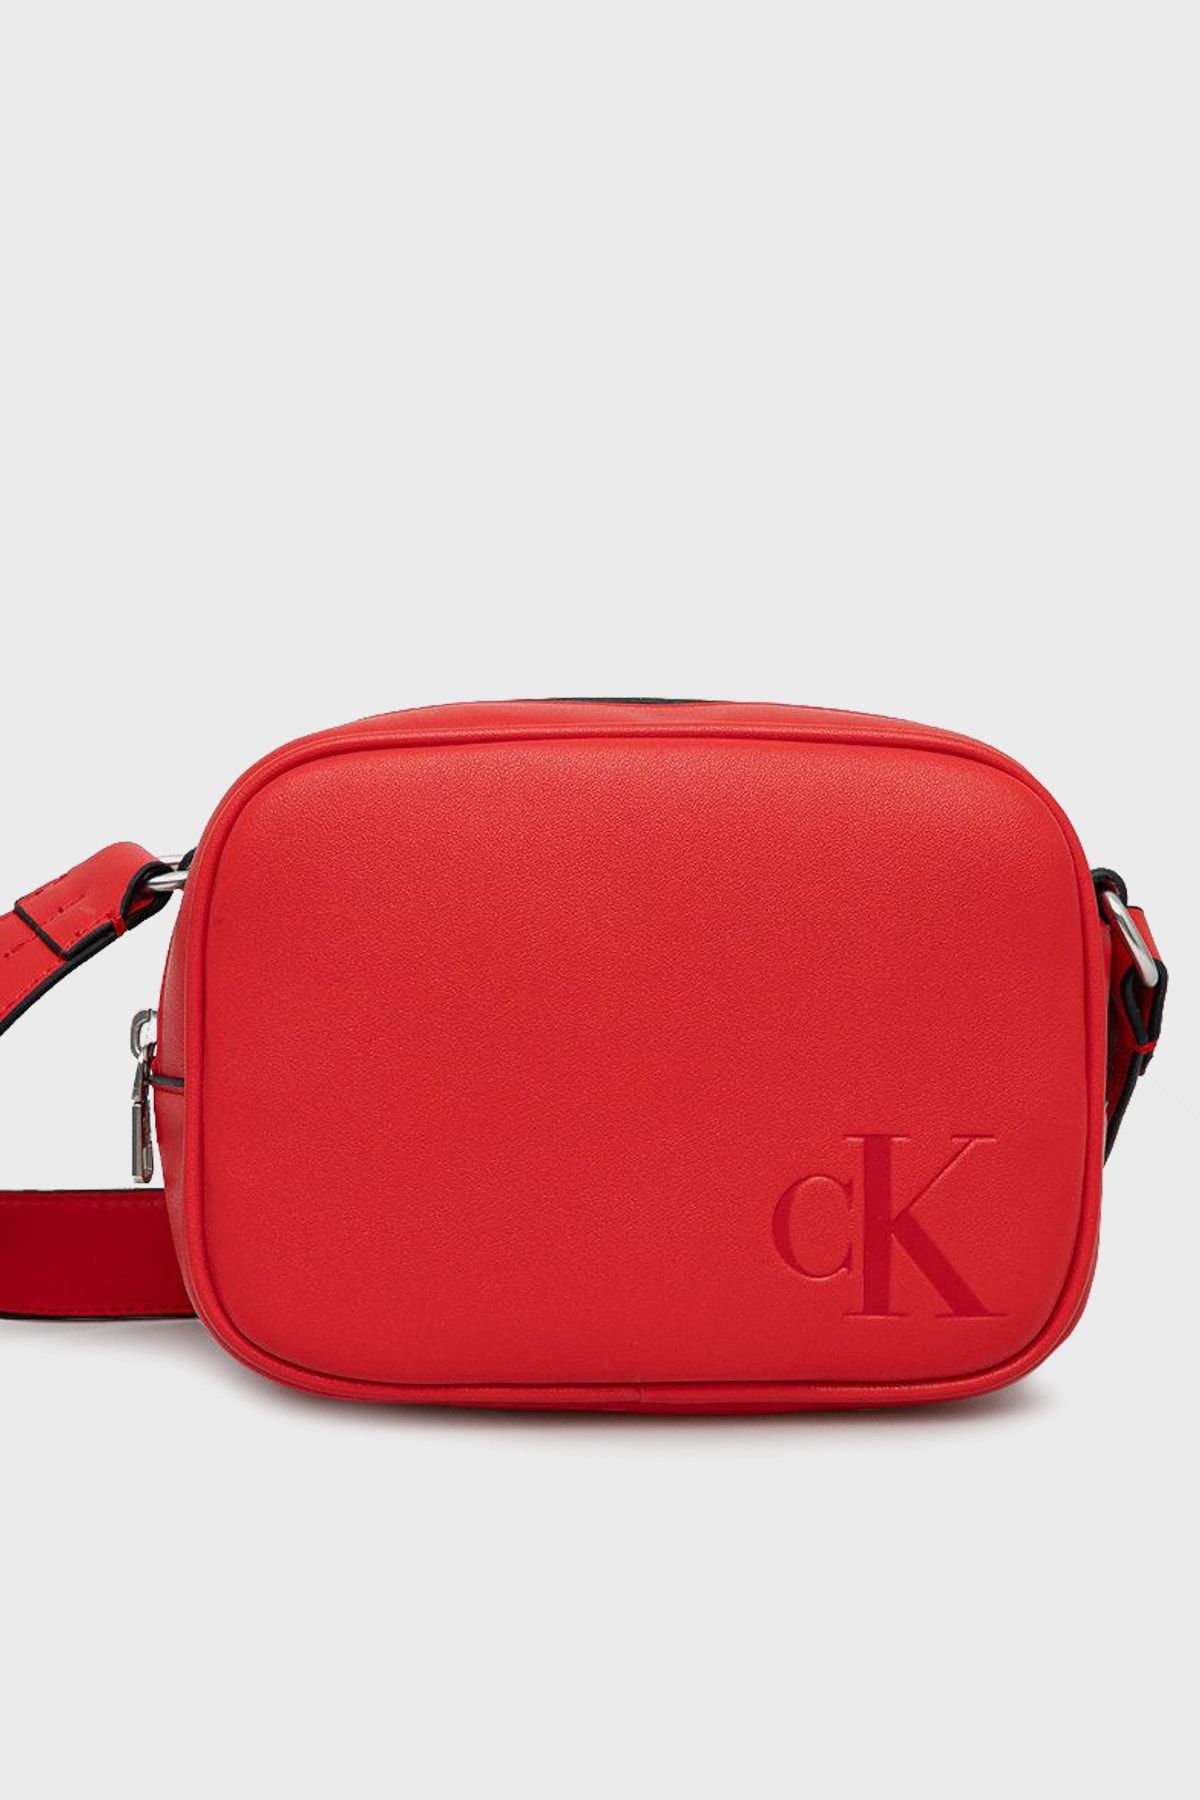 Calvin Klein Red Purse/Clutch, Wallet, Crossbody. “Cartera De Mujer” - Đức  An Phát